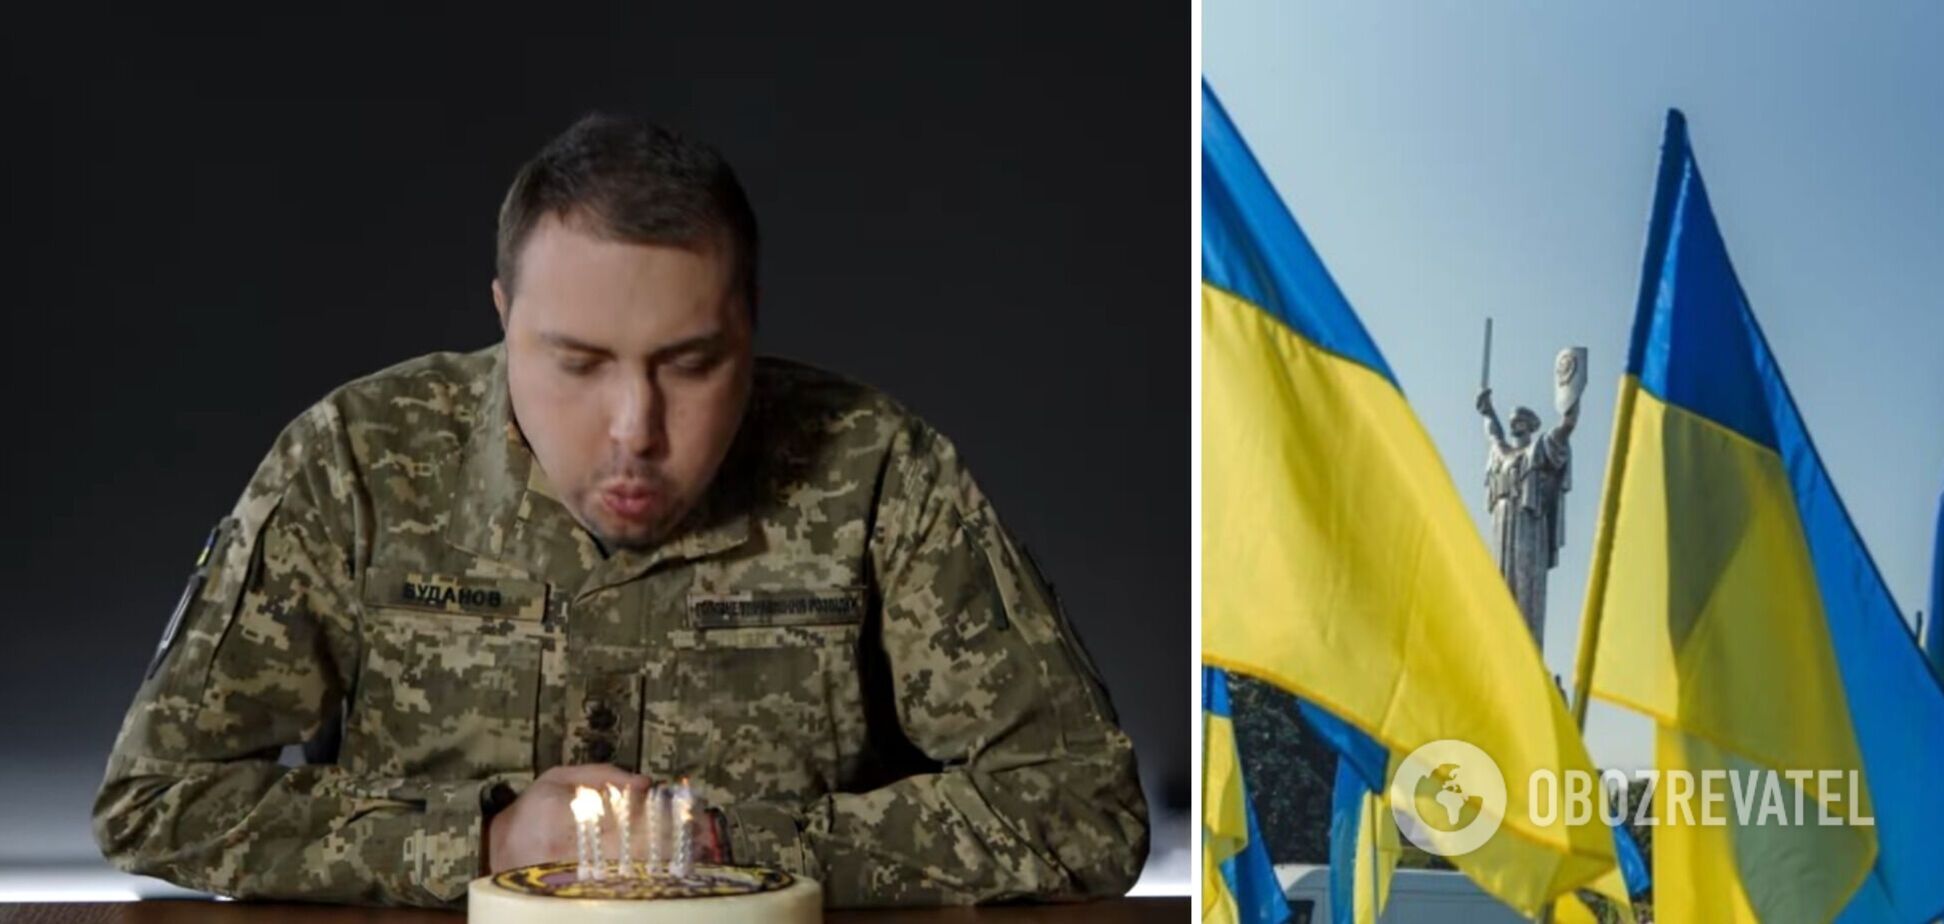 Буданов признался, что загадал, задувая свечи на нашумевшем видео